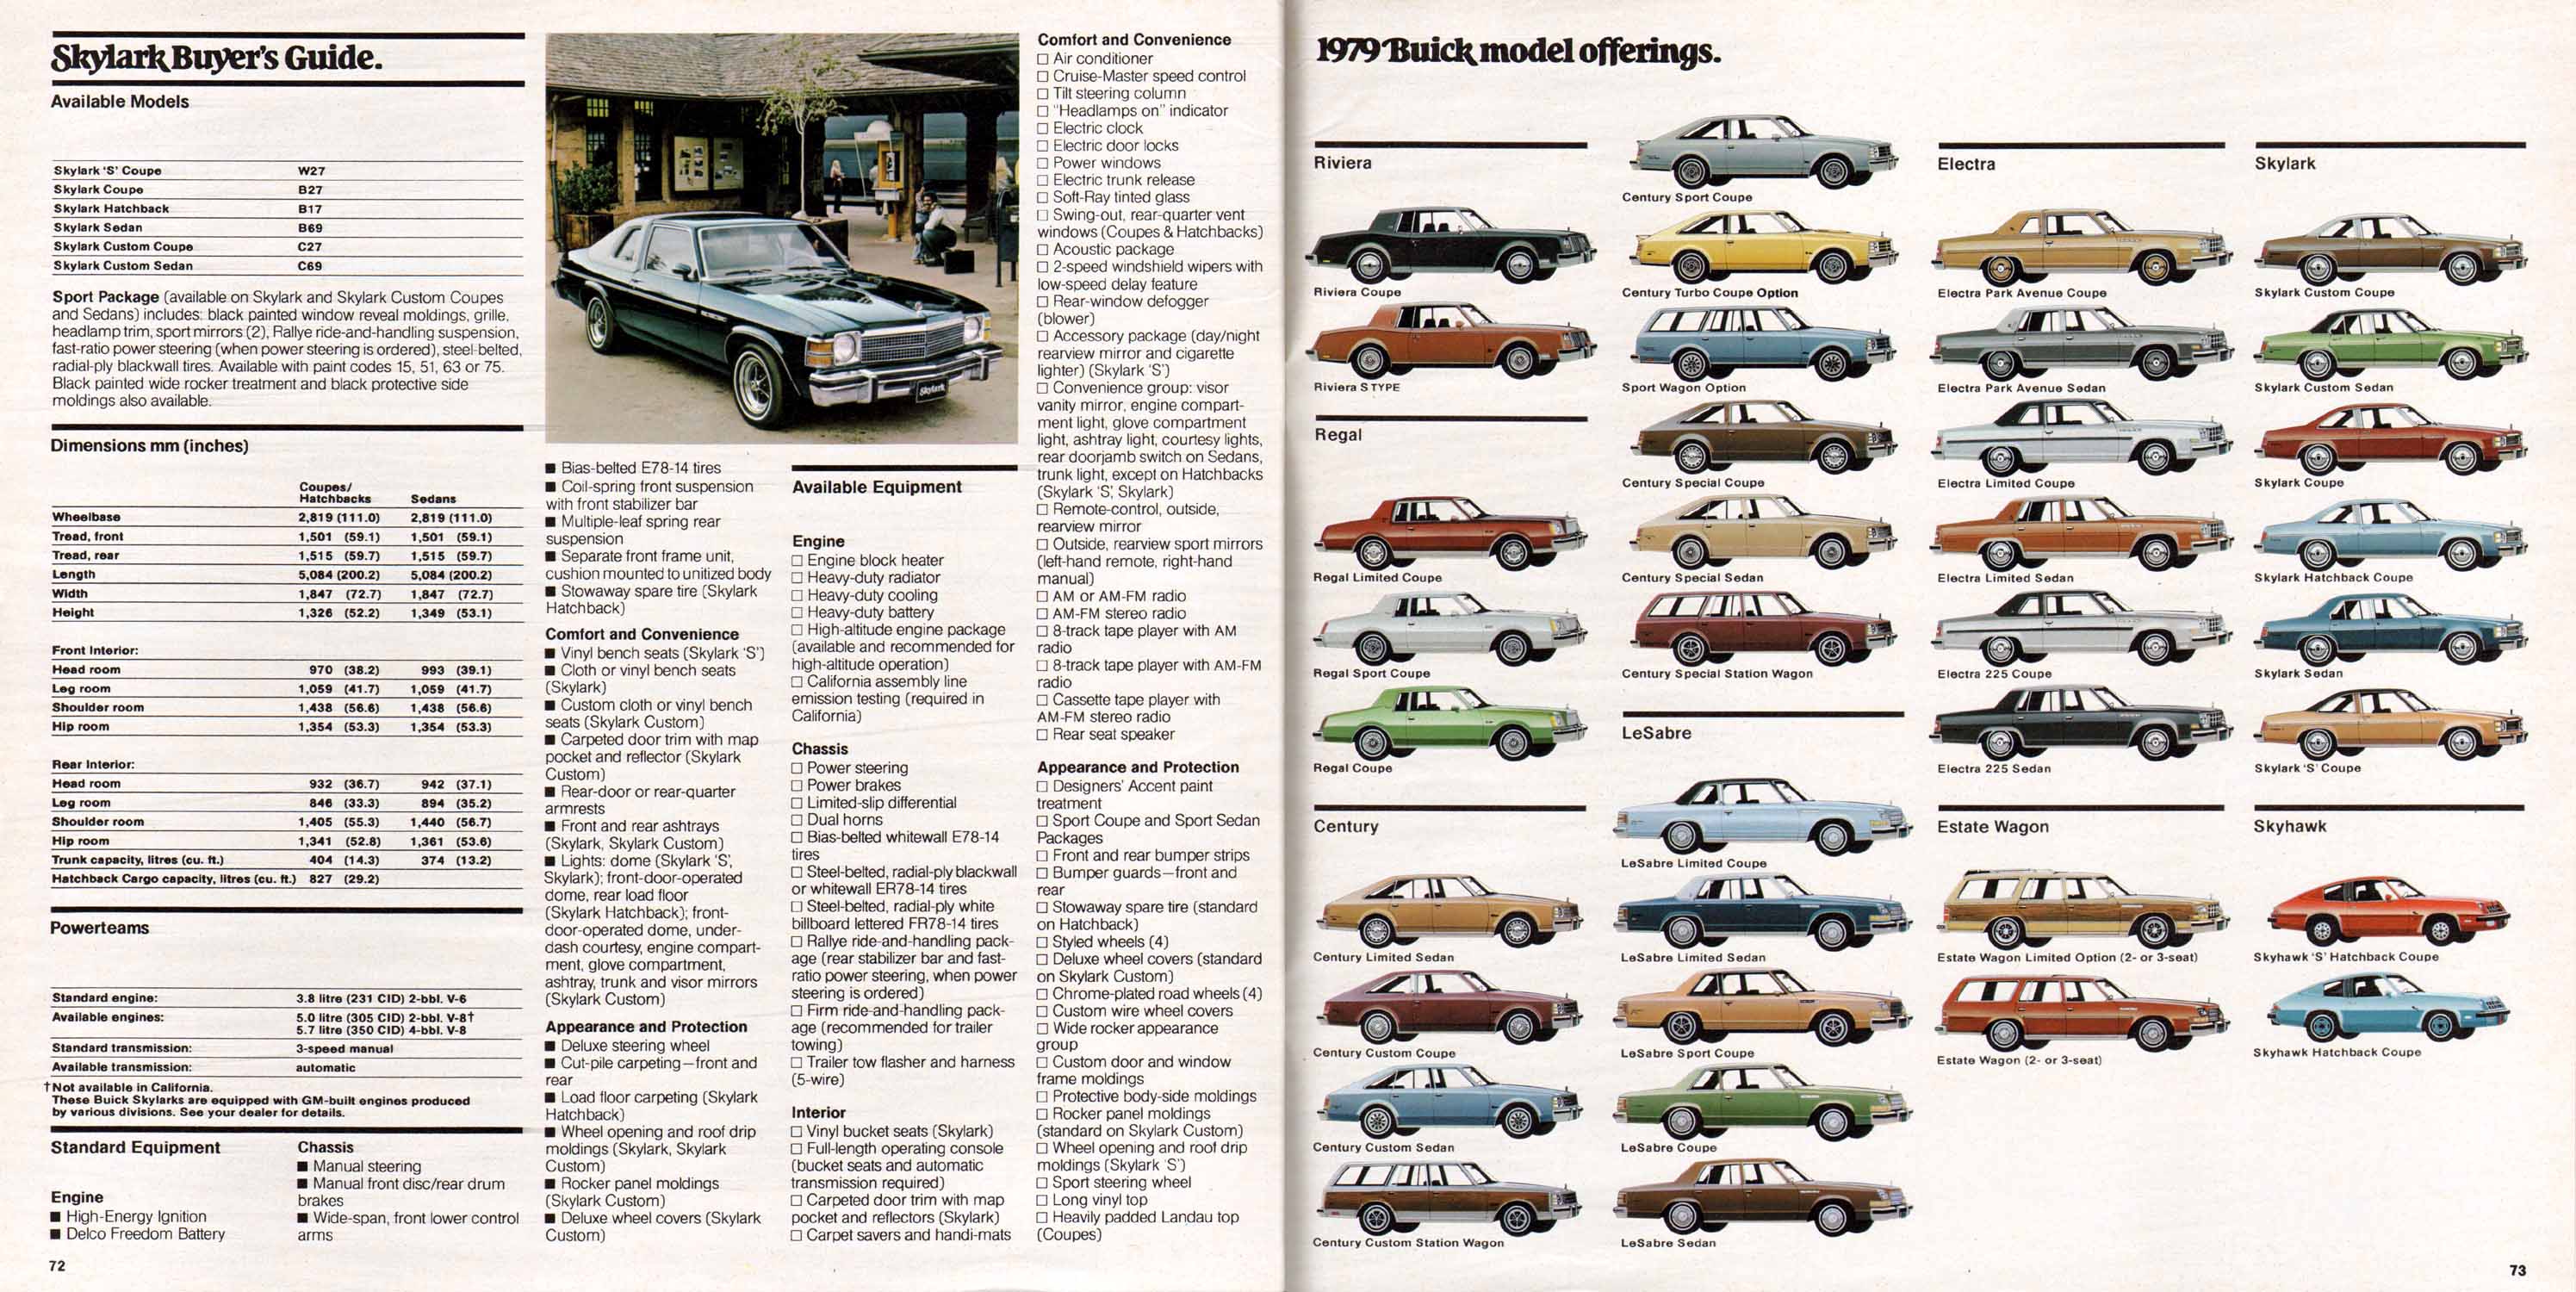 1979 Buick Full Line Prestige-72-73